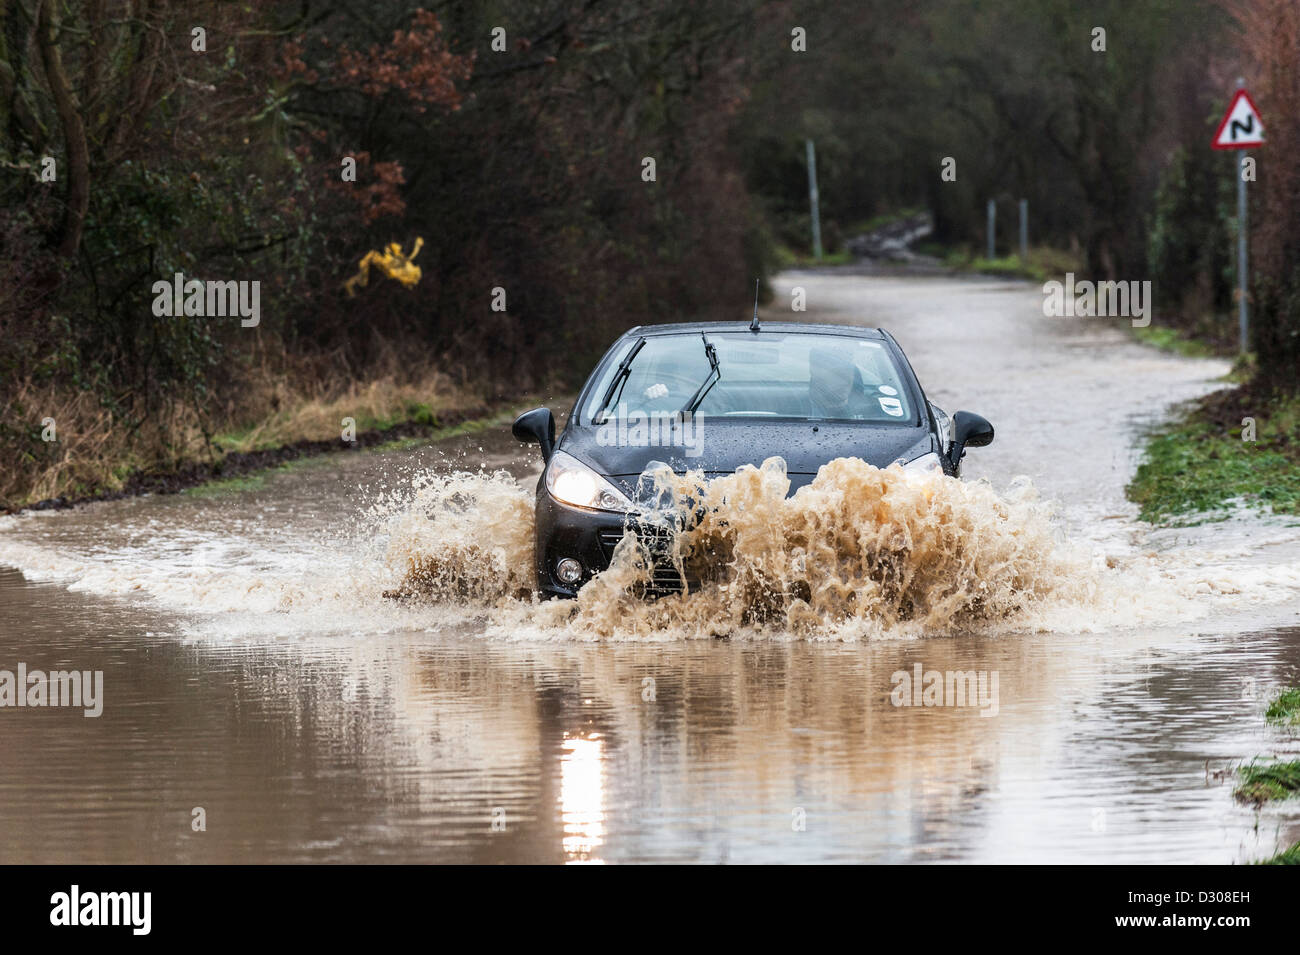 Les inondations, UK - luttes voiture à conduire le long d'une route inondée, England, UK Banque D'Images